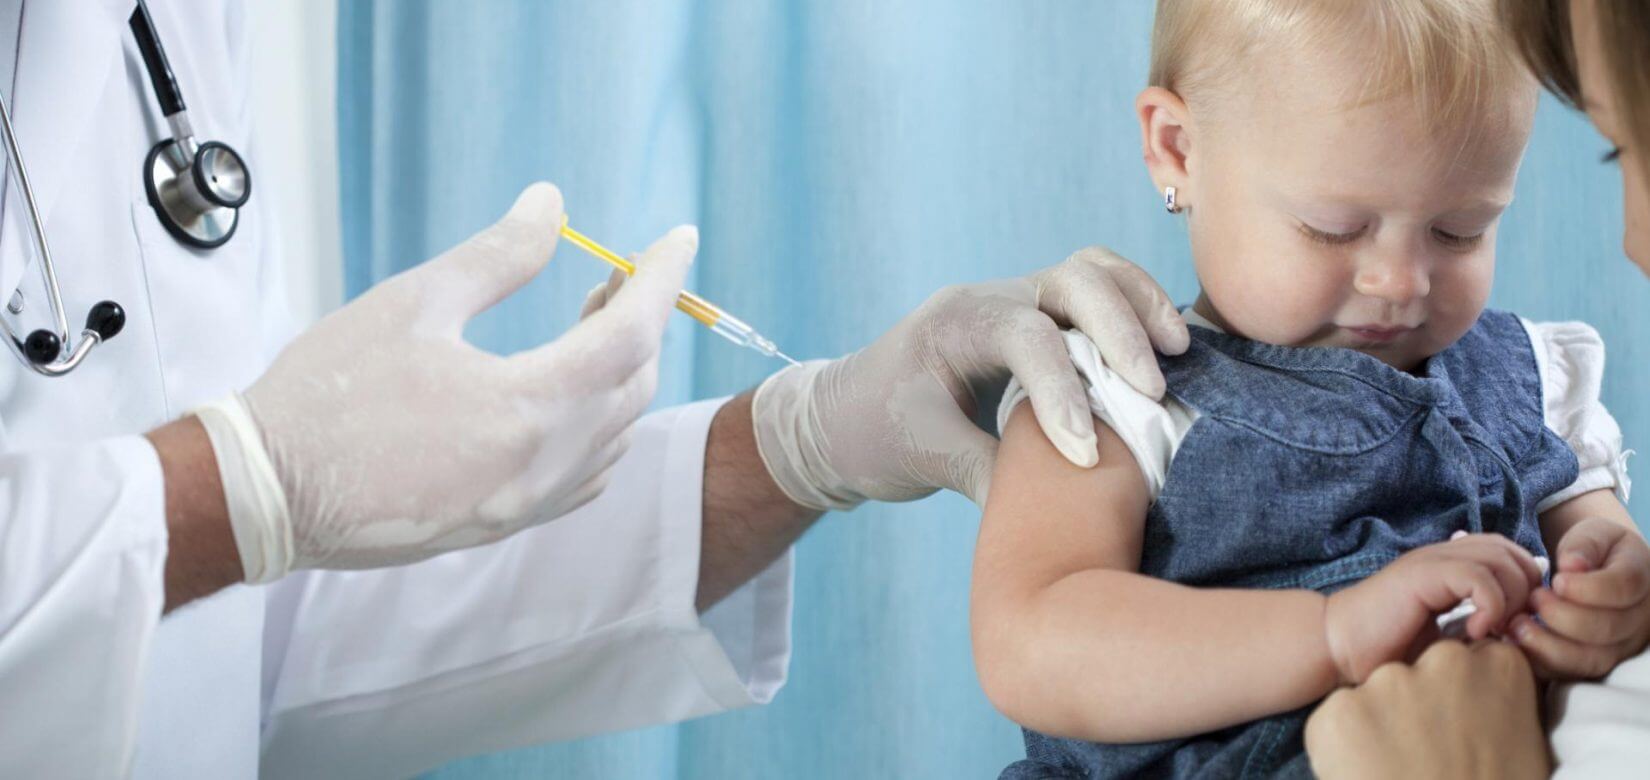 Γερμανία: Παιδιά 5-11 ετών εμβολιάστηκαν κατά λάθος, κατά του κορoνοϊού, με δόση για ενηλίκους